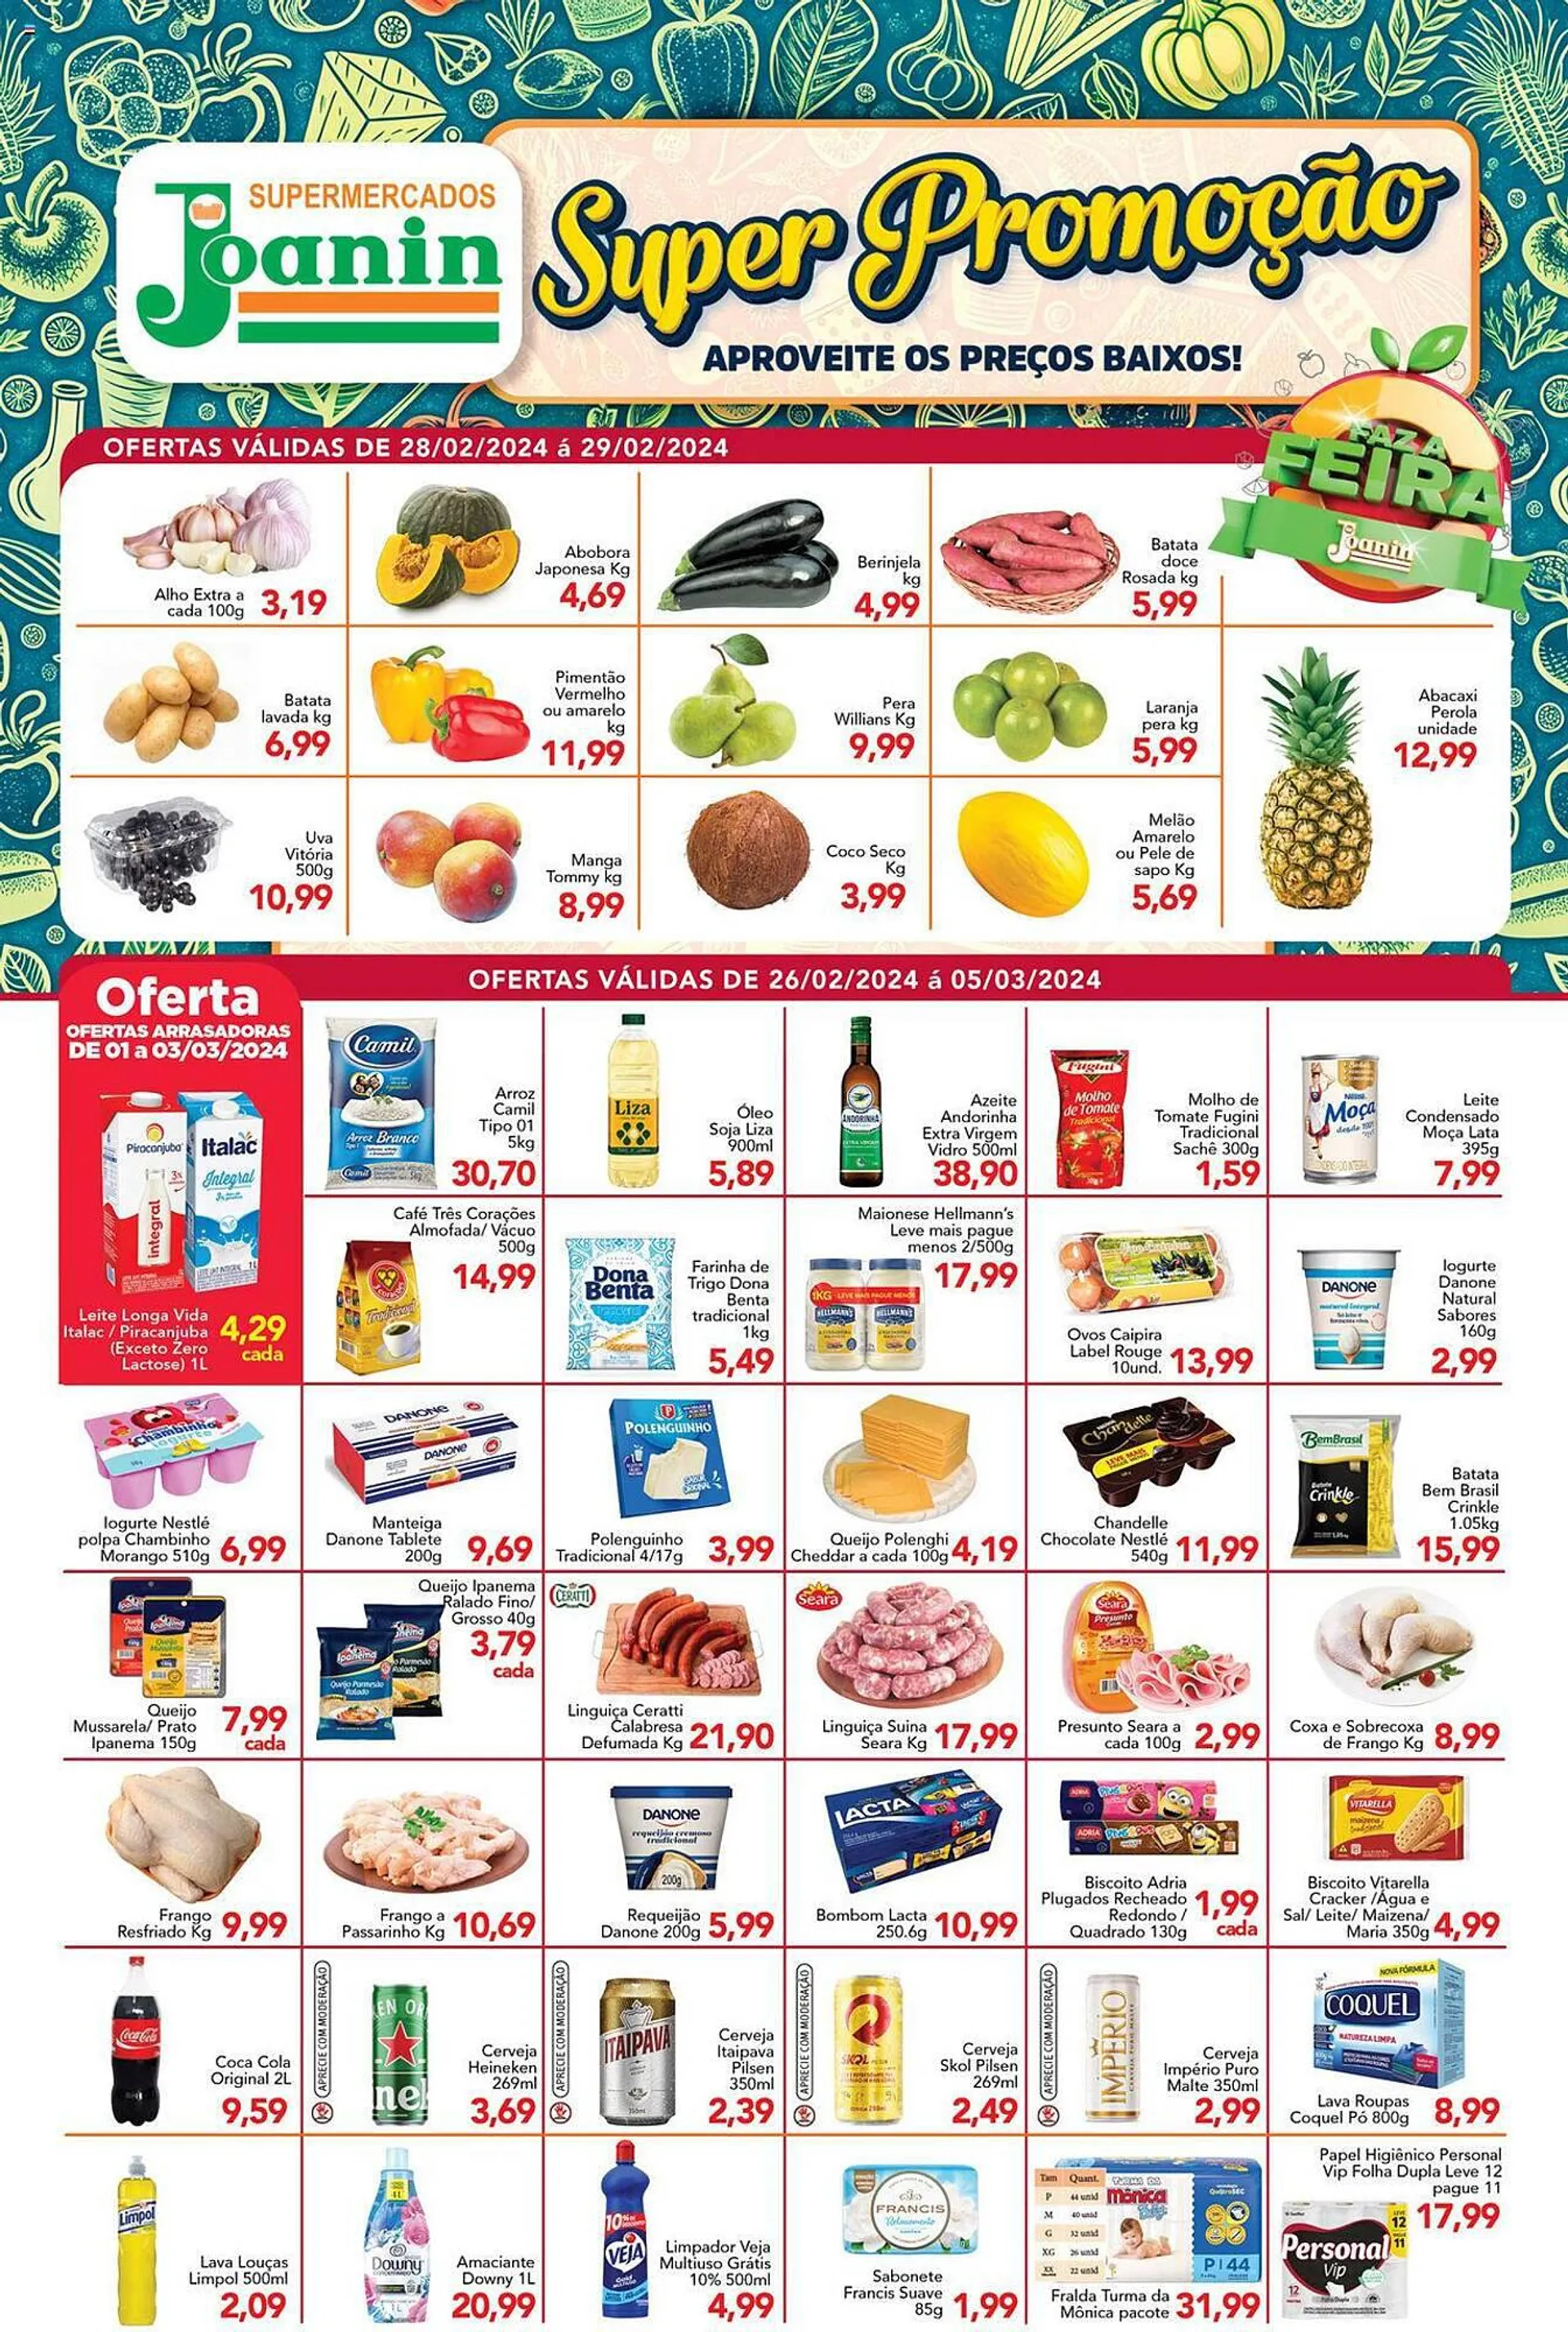 Encarte de Catálogo Supermercados Joanin 26 de fevereiro até 5 de março 2024 - Pagina 